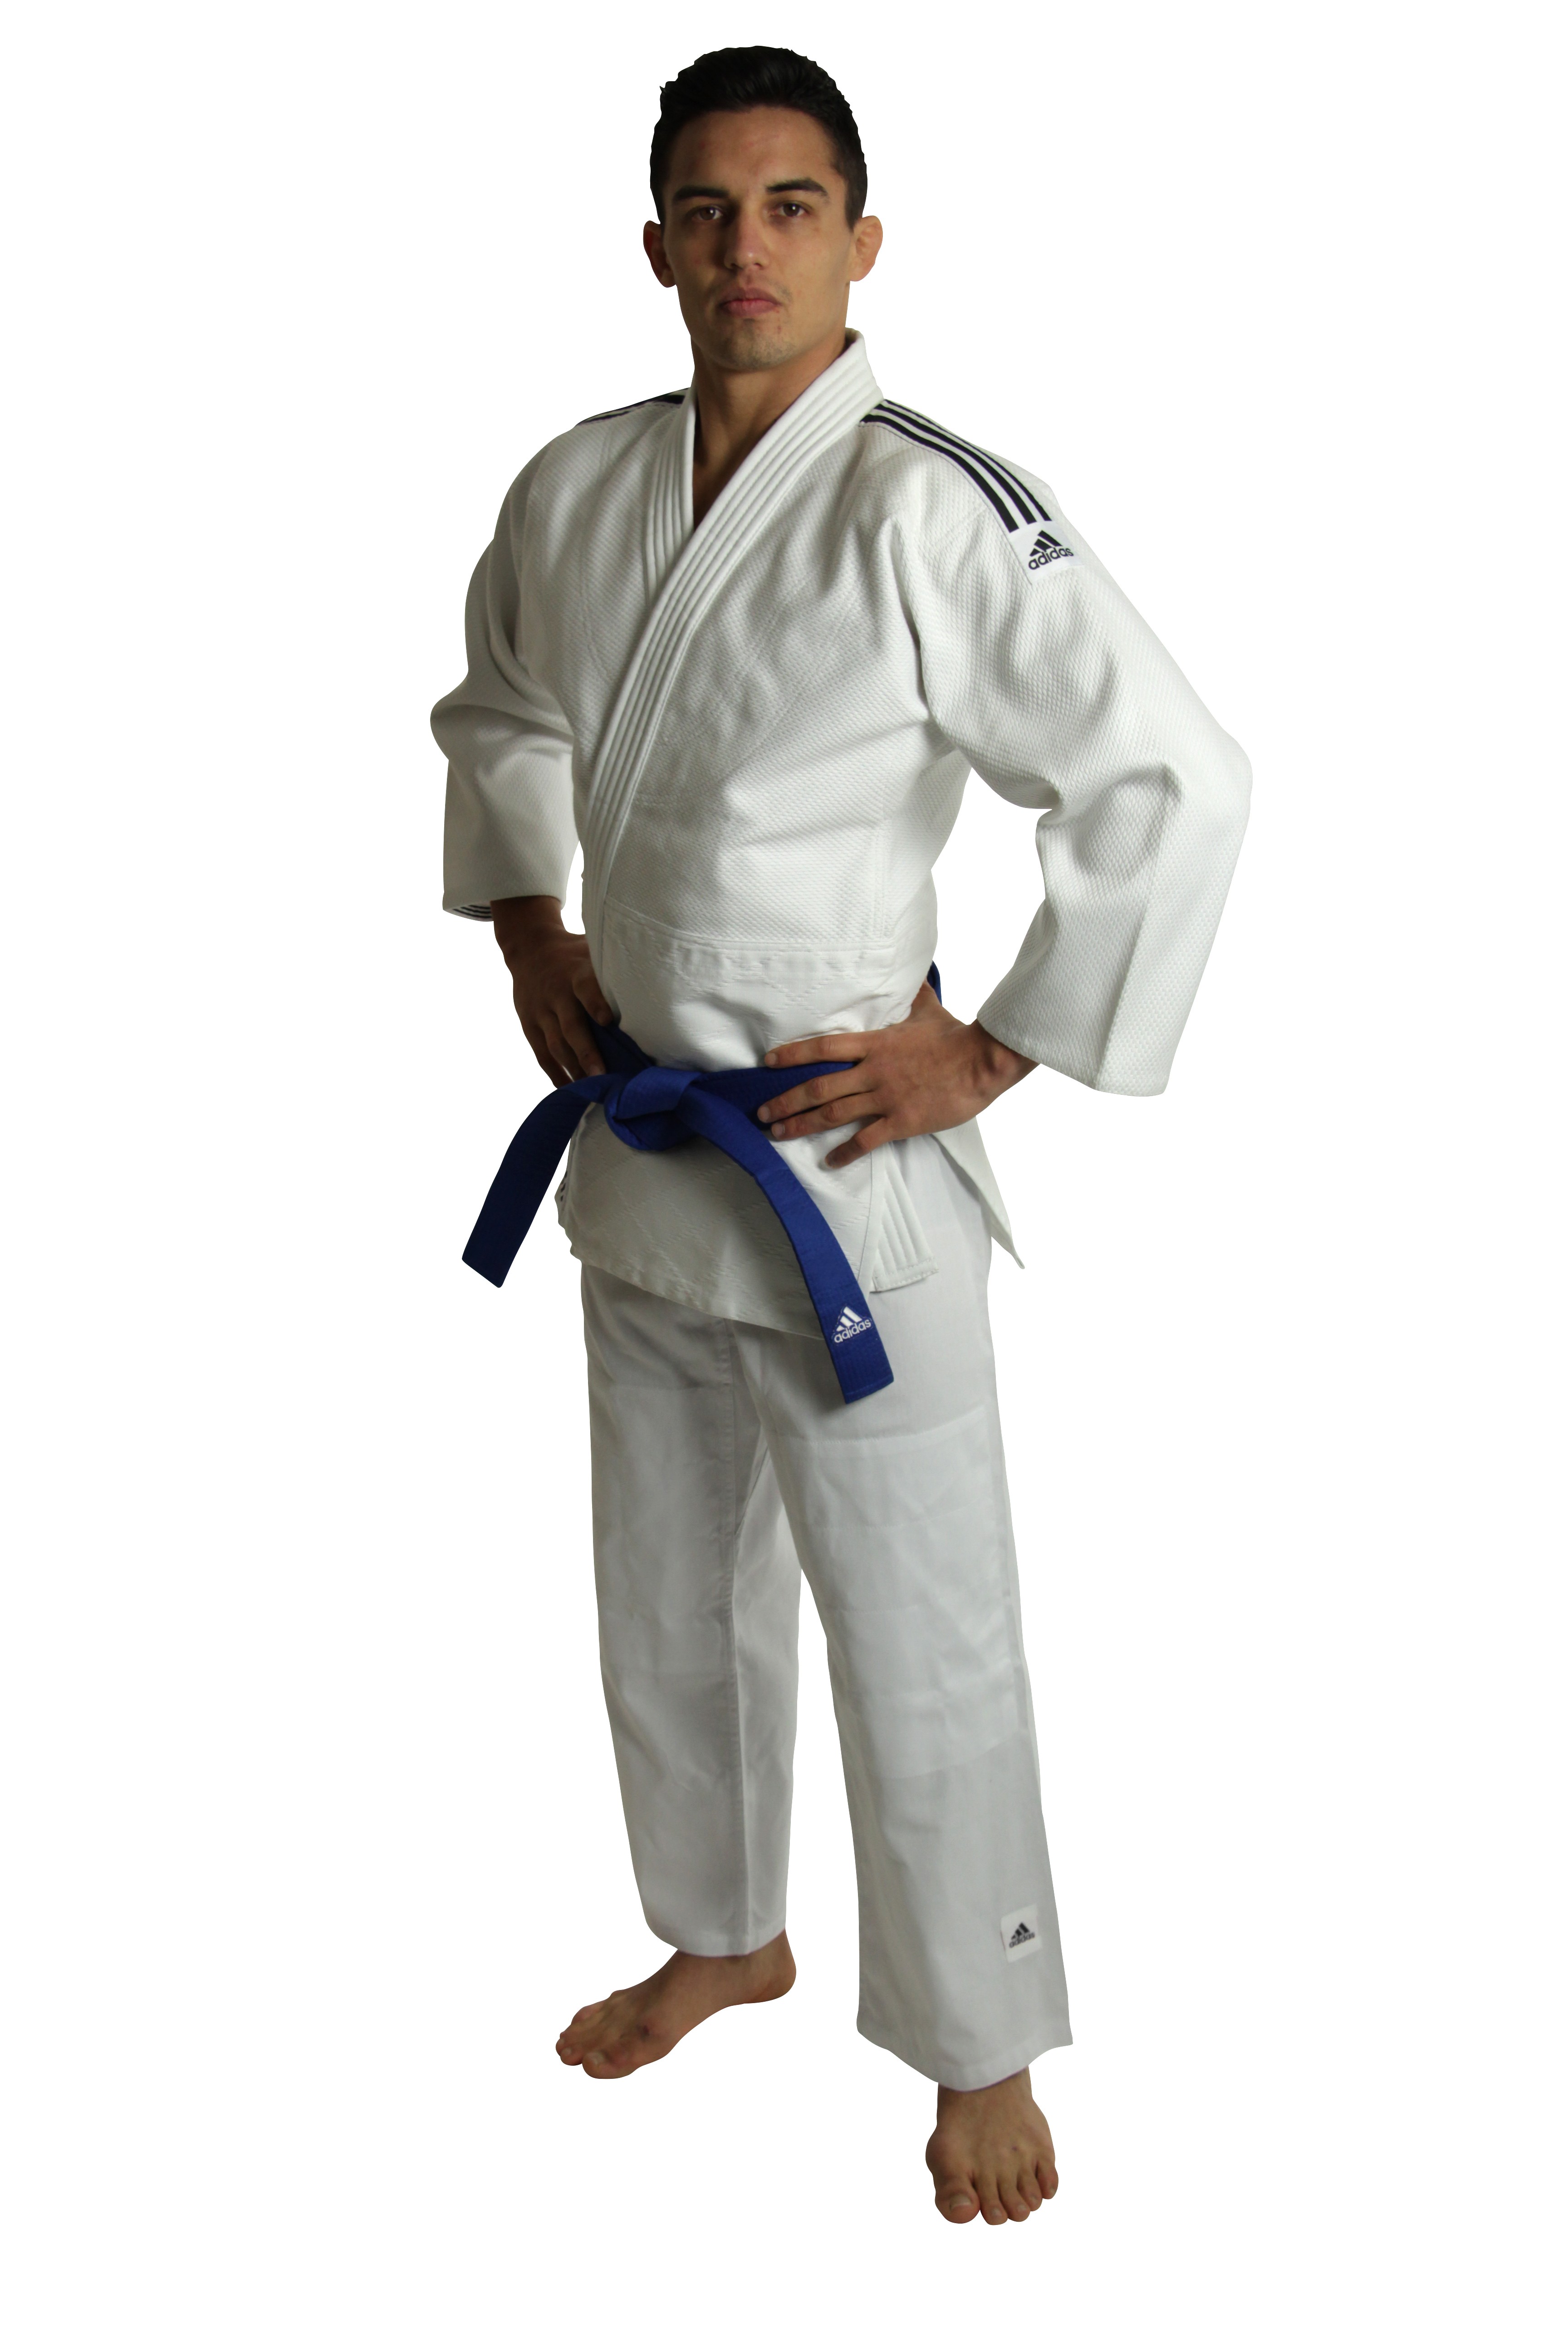 kimono judo adidas j500 - 58% remise - www.muminlerotomotiv.com.tr